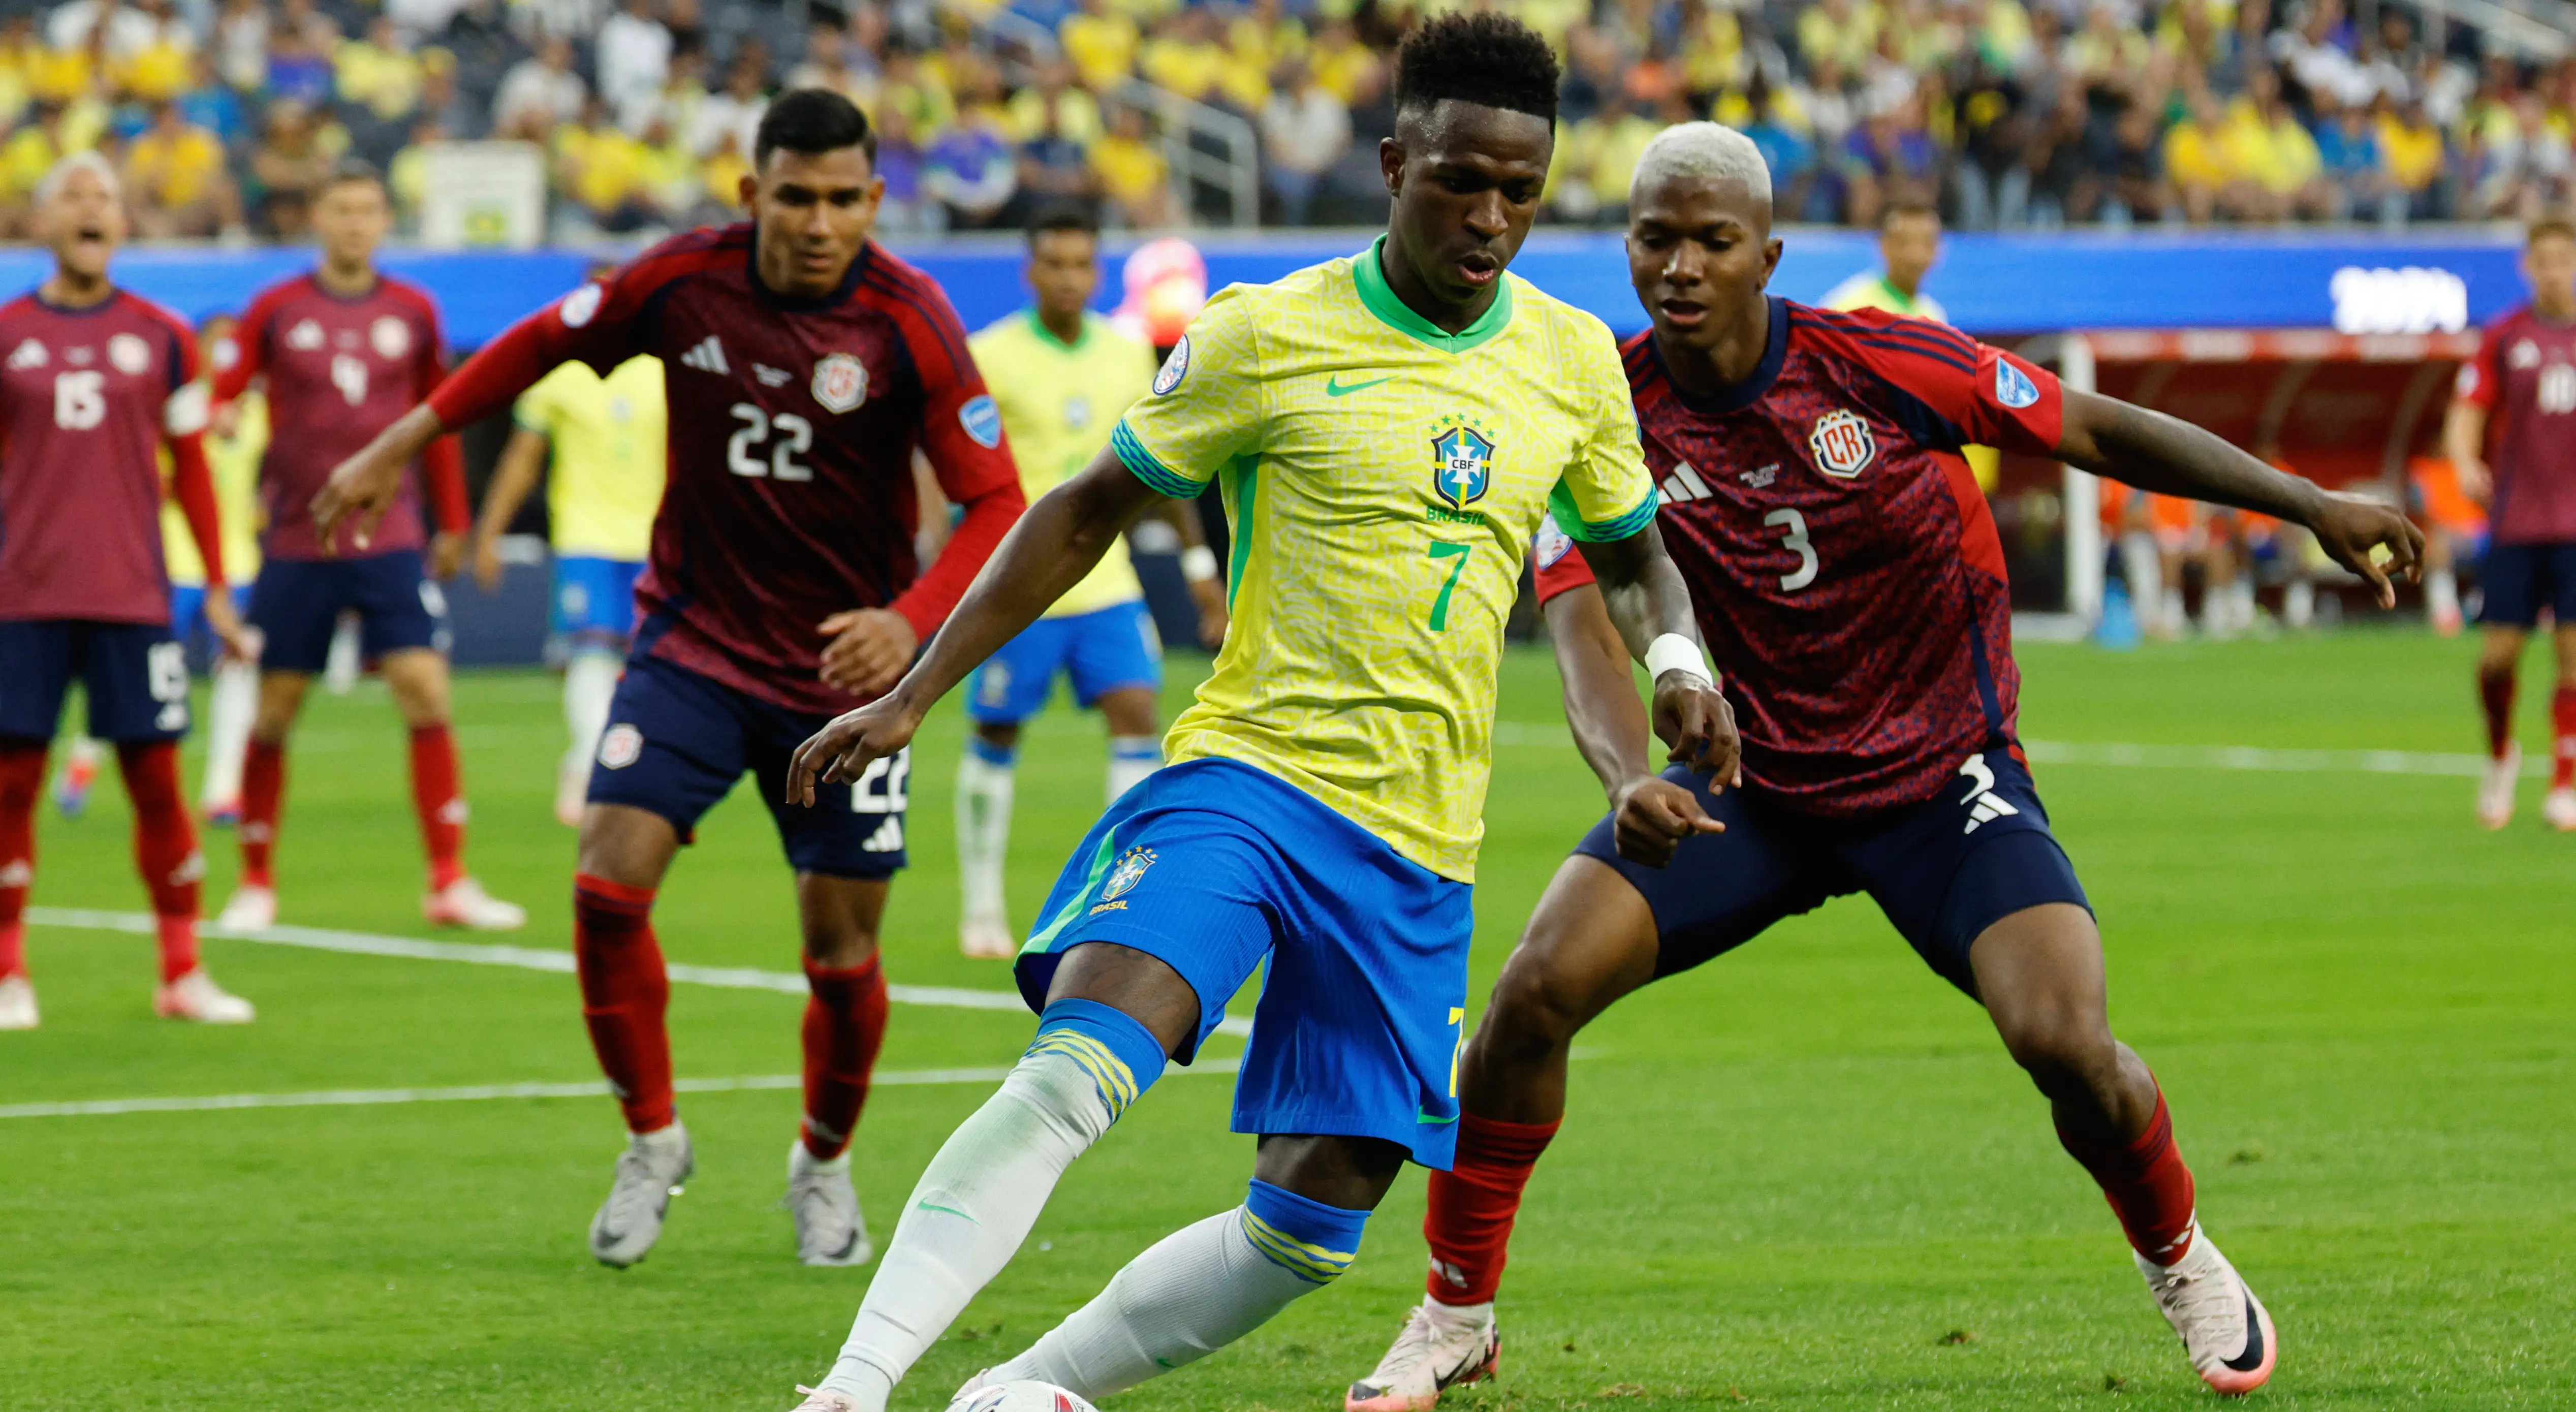 Imagem do jogo entre Brasil x Costa Rica pela 1ª rodada da Copa América